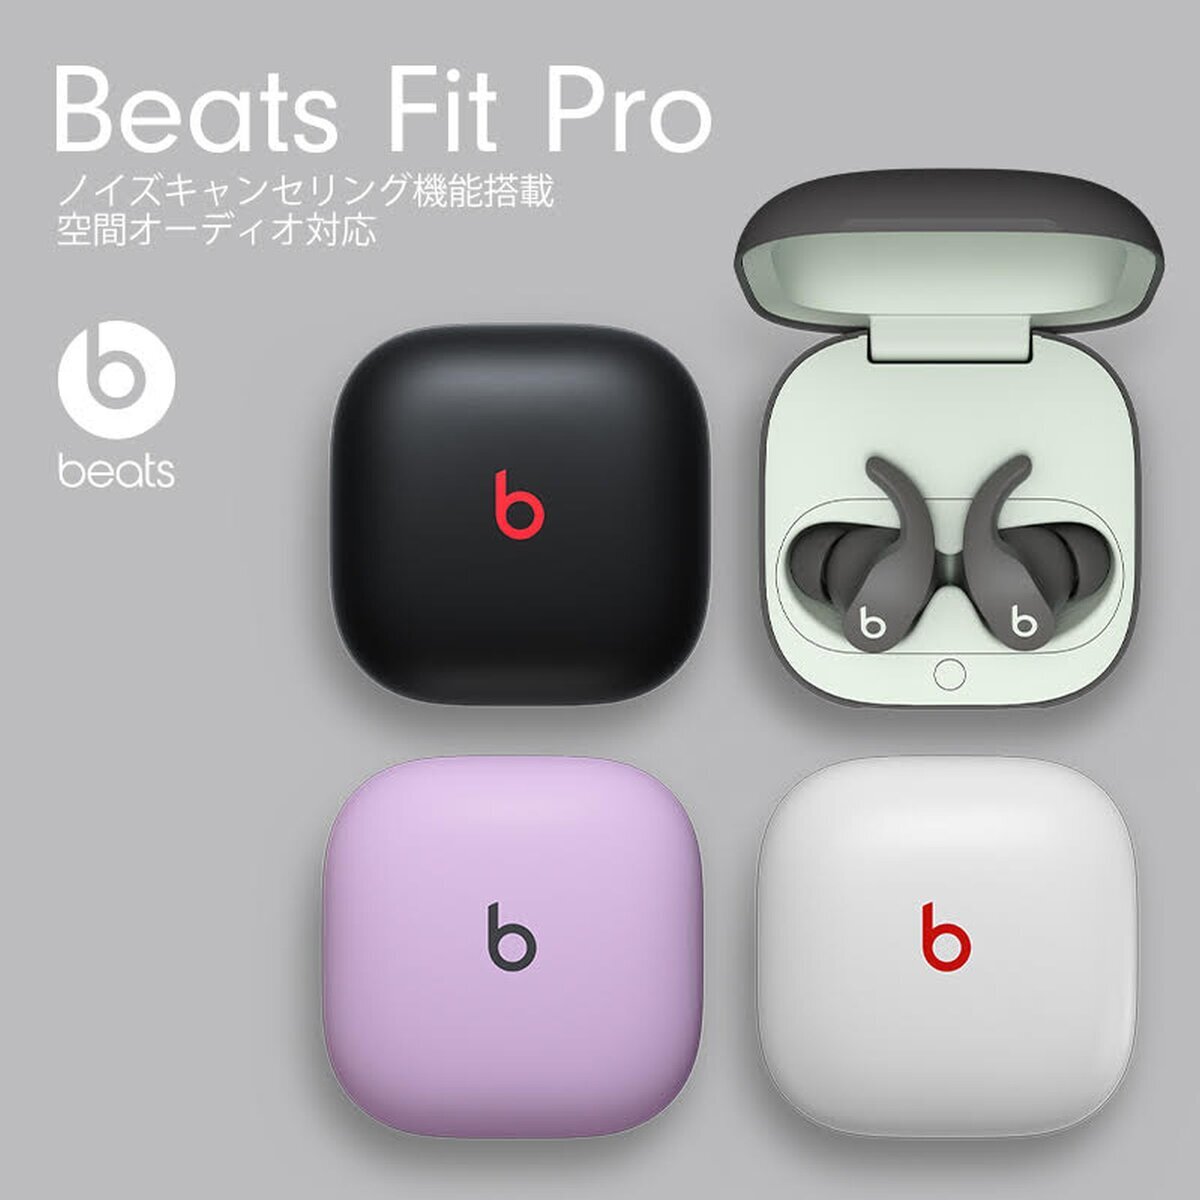 Beats Fit Pro 完全ワイヤレスイヤホン Costco Japan